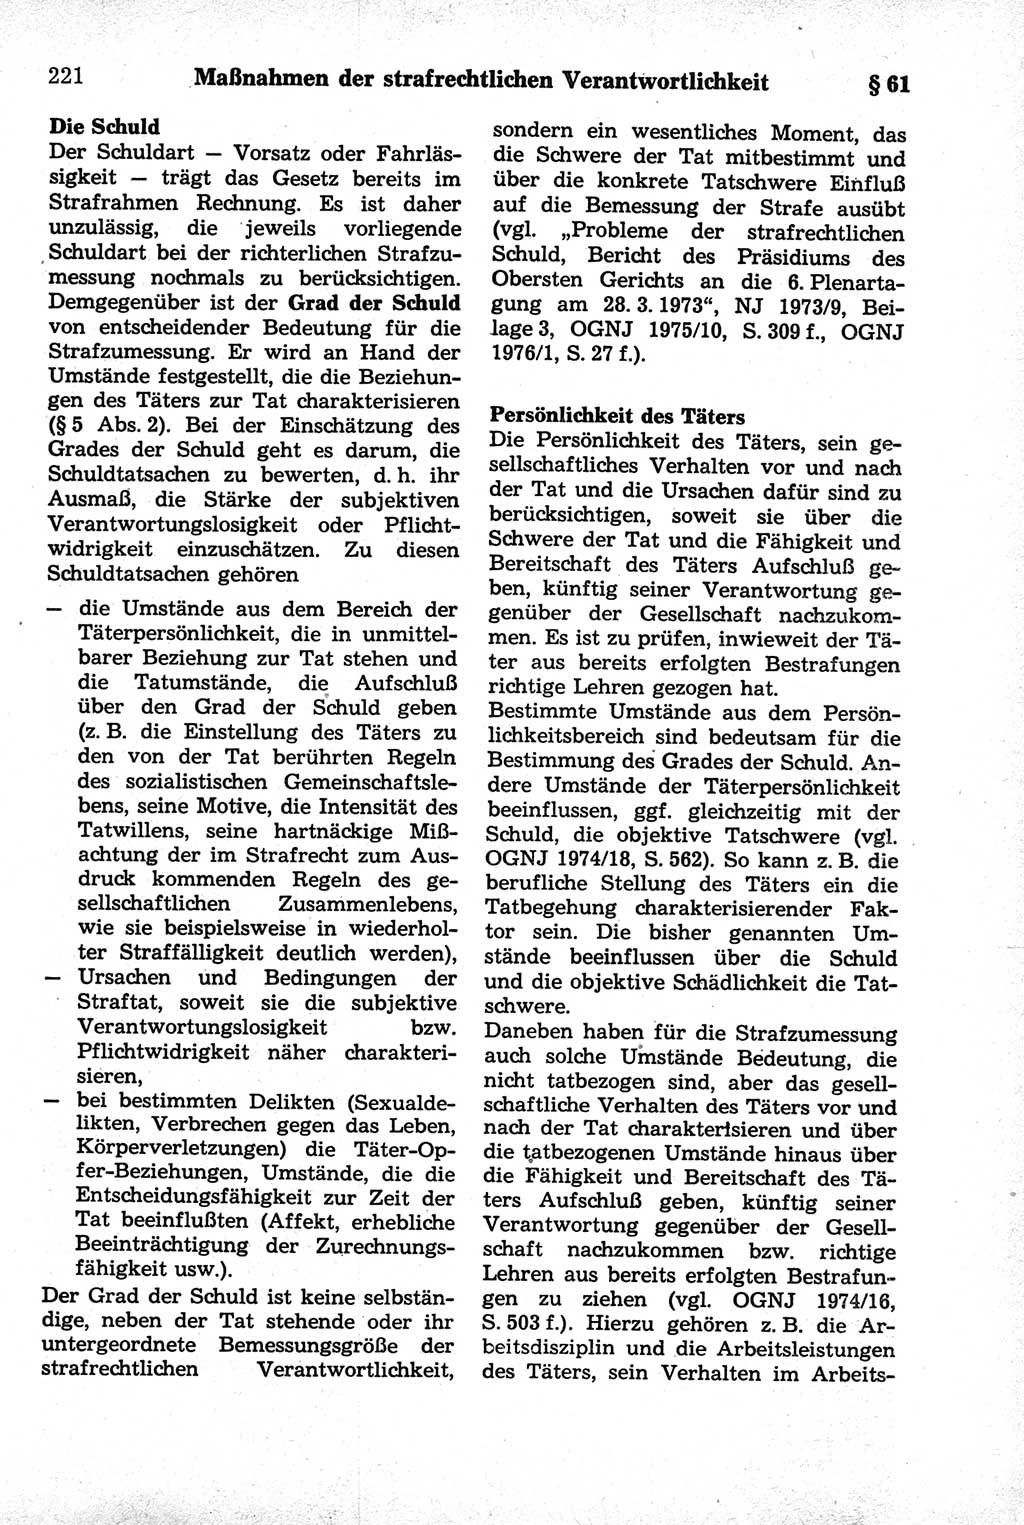 Strafrecht der Deutschen Demokratischen Republik (DDR), Kommentar zum Strafgesetzbuch (StGB) 1981, Seite 221 (Strafr. DDR Komm. StGB 1981, S. 221)